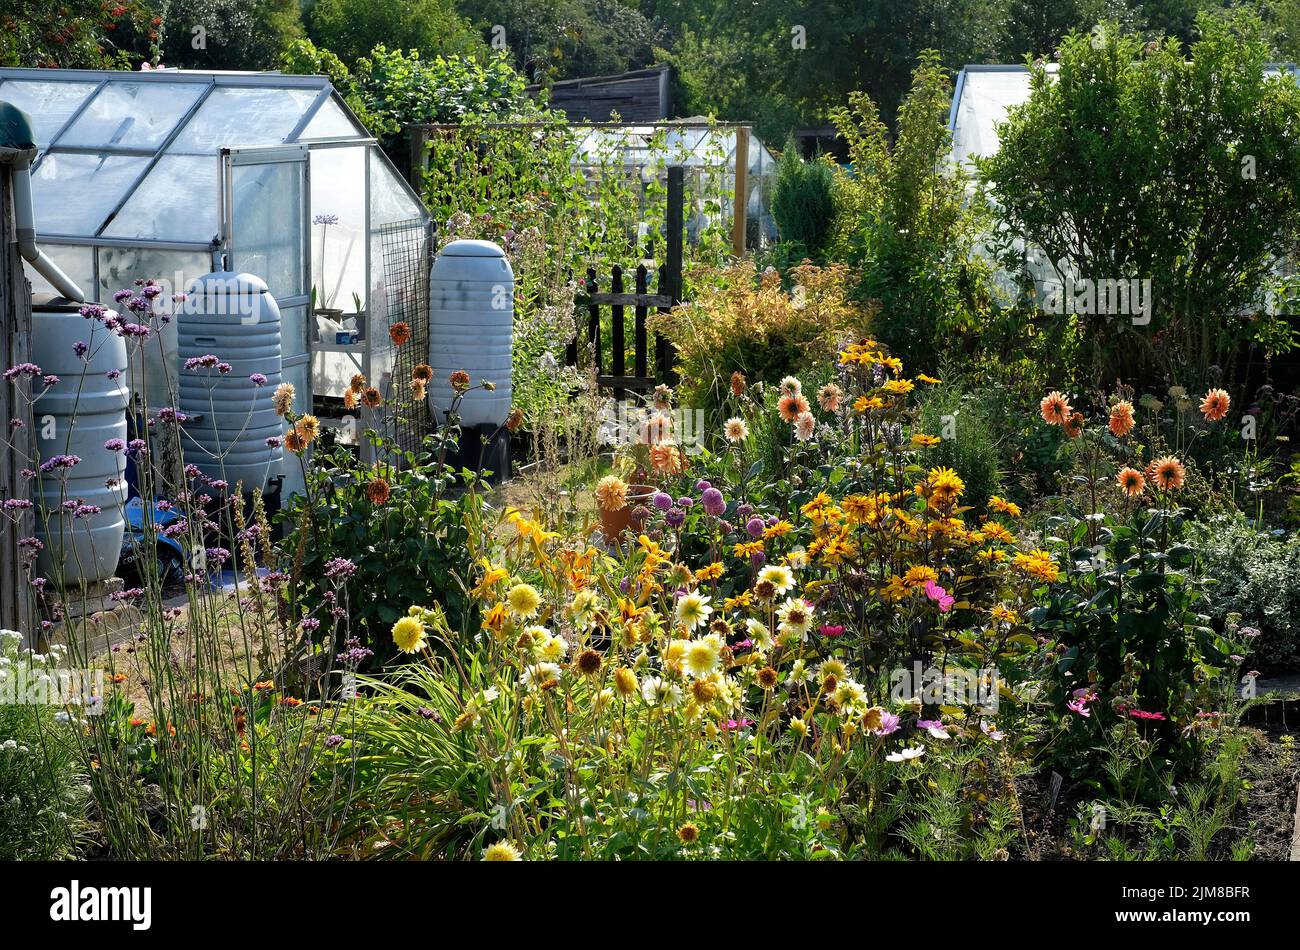 allotment garden in summer drought, norfolk, england Stock Photo